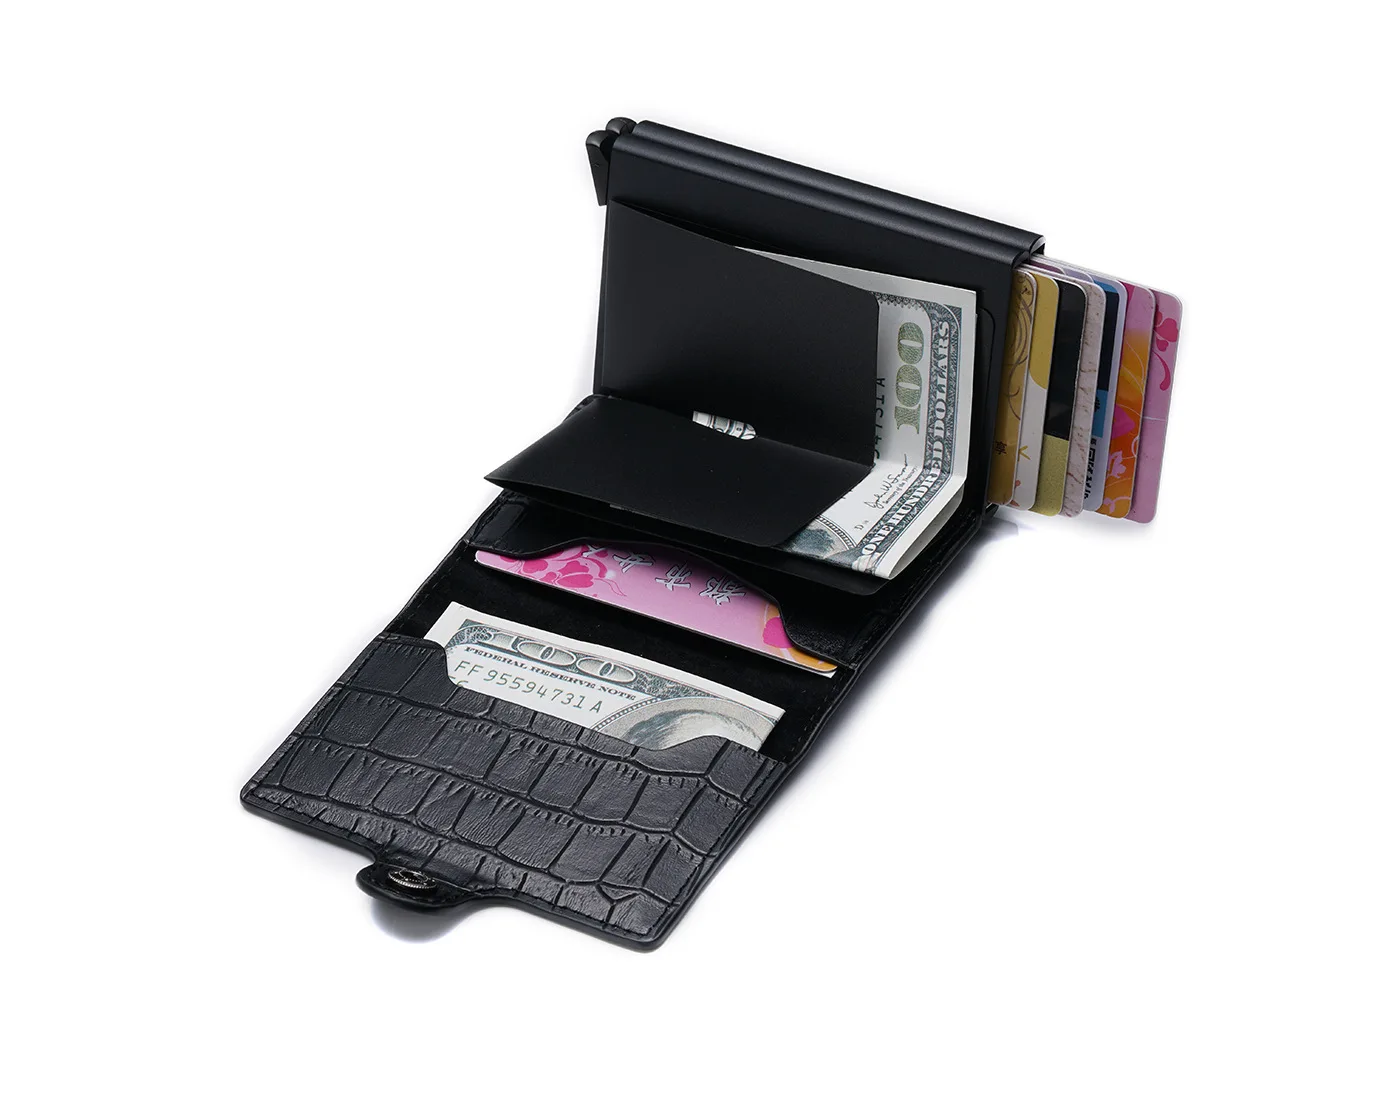 Bisi Goro, из искусственной кожи, кредитный держатель для карт, новинка, алюминиевая двойная коробка для мужчин и женщин, металлическая RFID, Ретро стиль, кошелек для путешествий